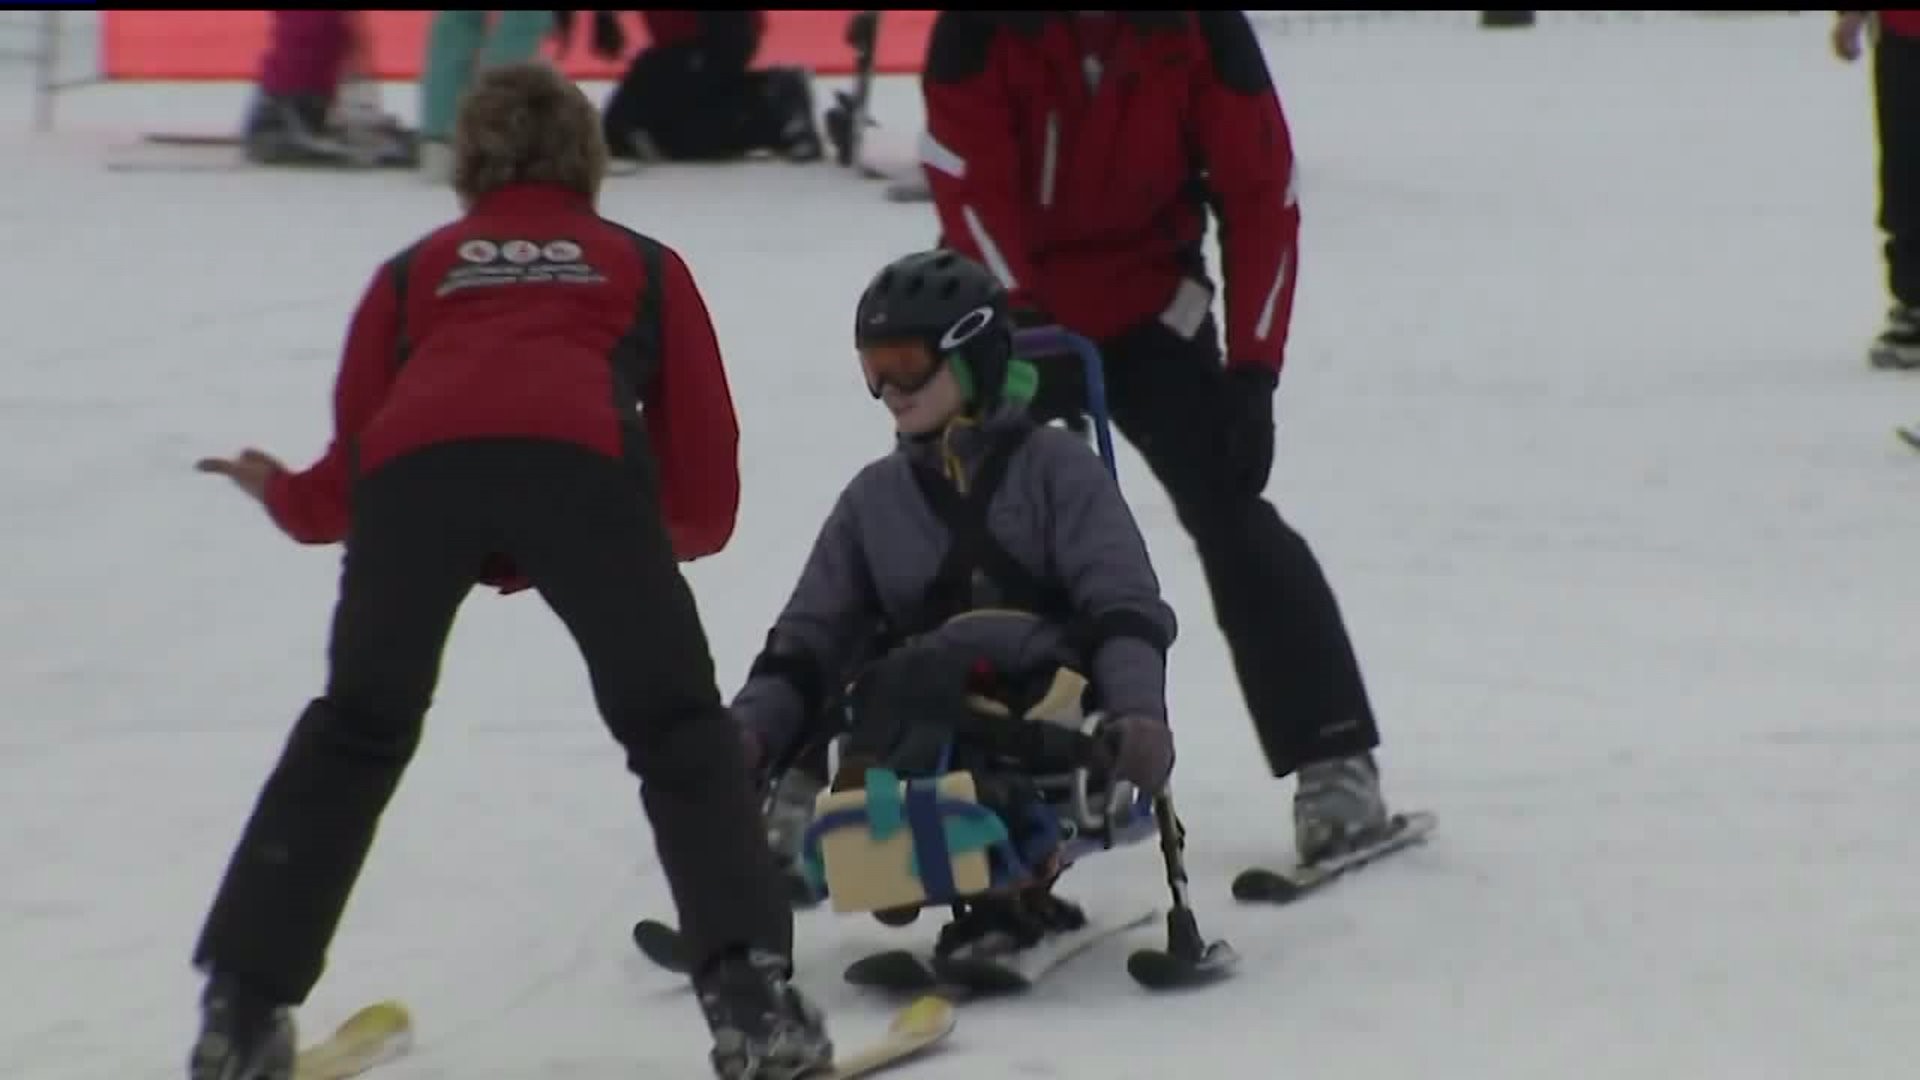 Warrington Township Adaptive Ski Day